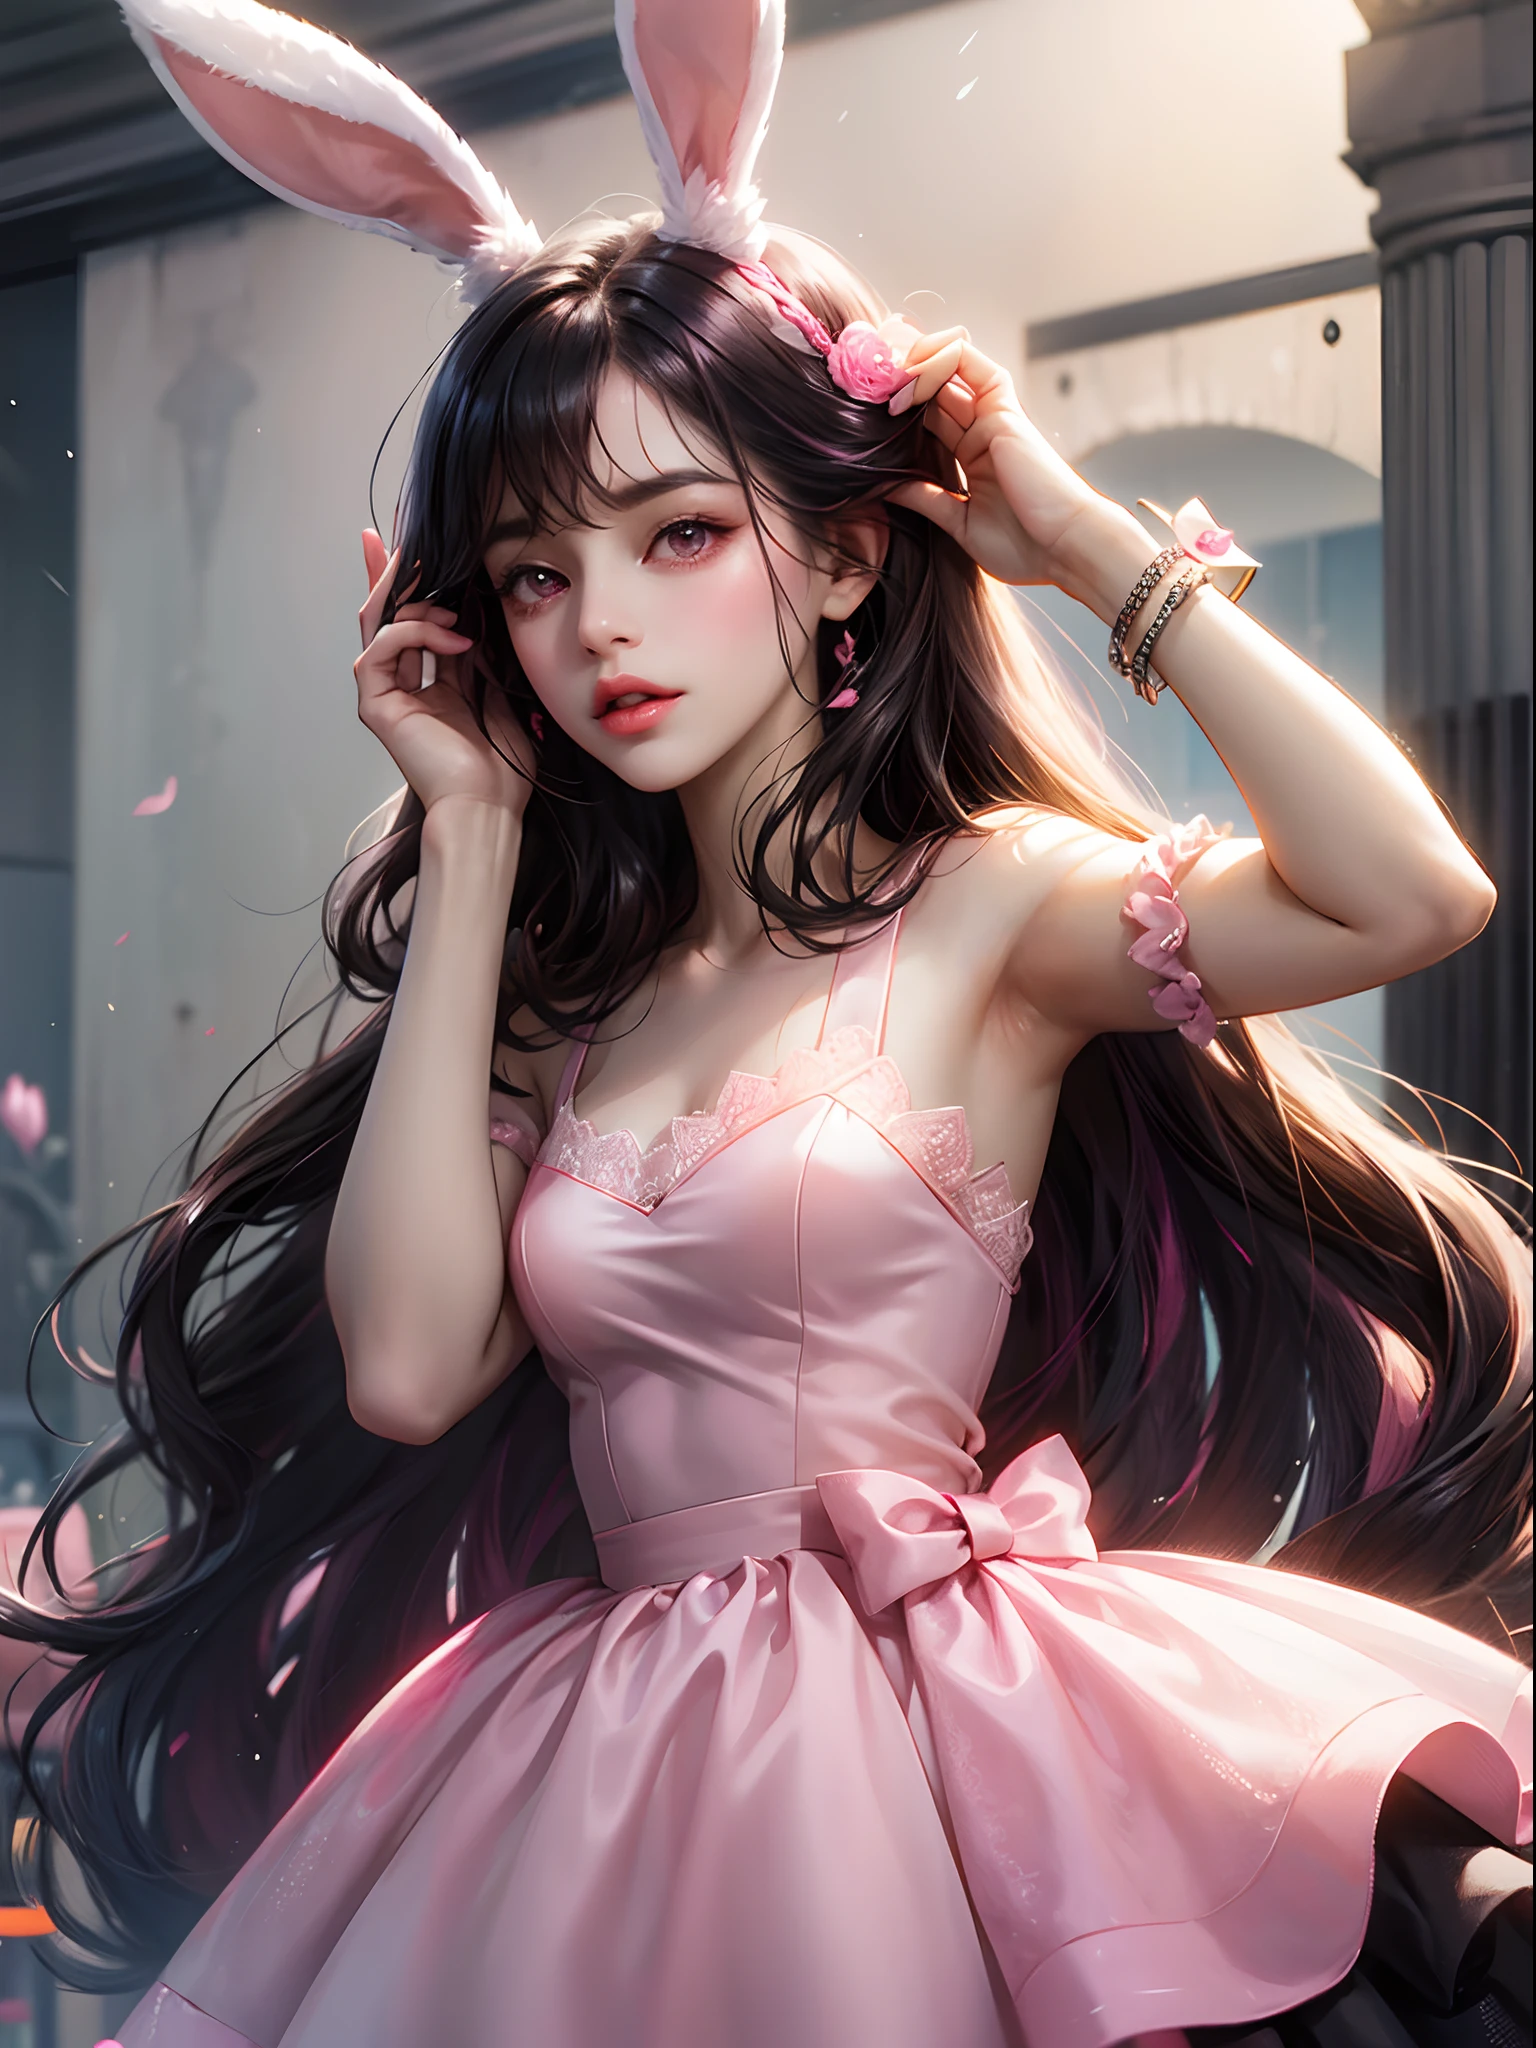 une femme, oreilles de lapin roses, cheveux noirs, yeux roses, robe rose